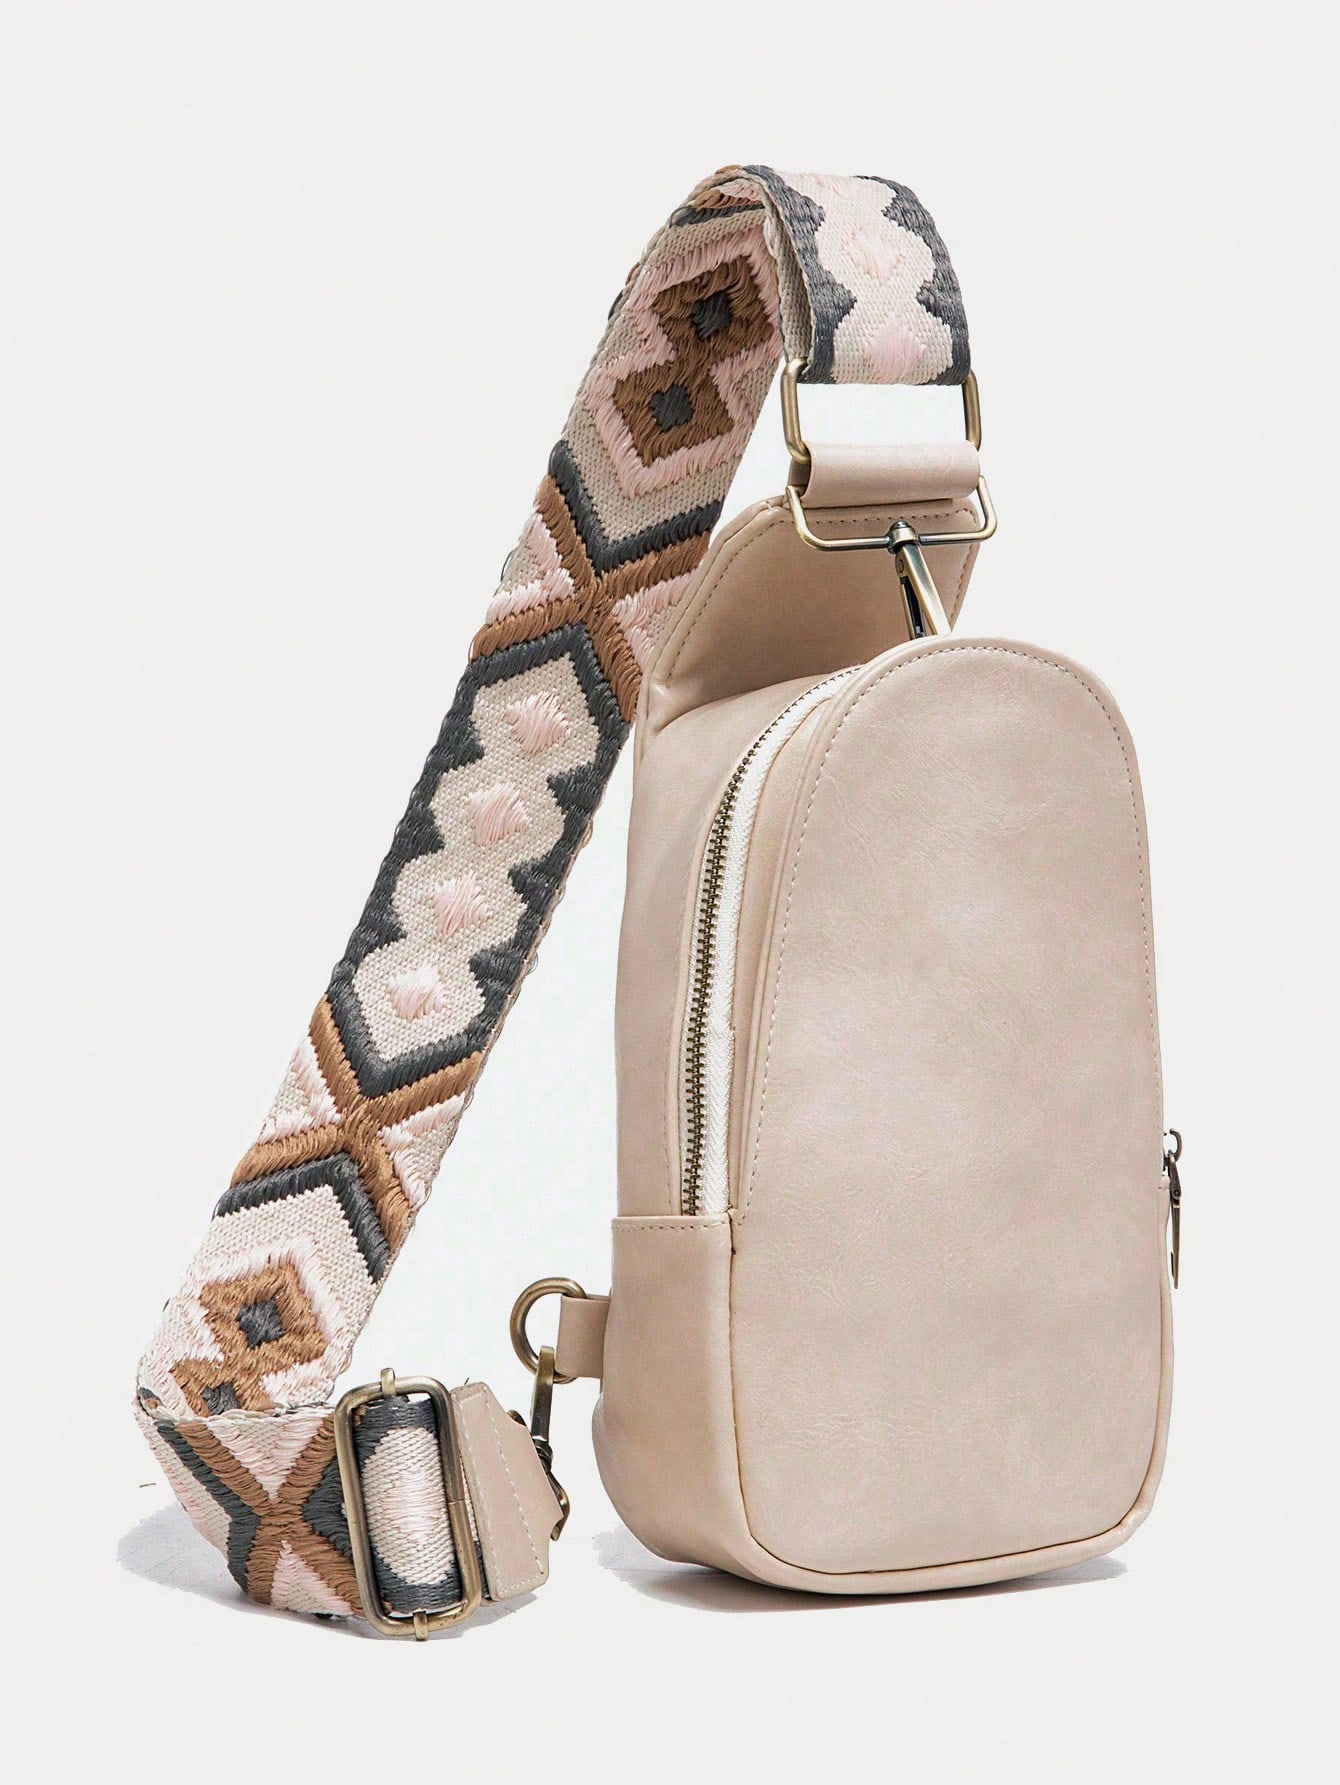 Сумка-слинг для женщин Сумка-слинг из искусственной кожи Маленький рюкзак через плечо Модная нагрудная сумка для путешествий, бежевый